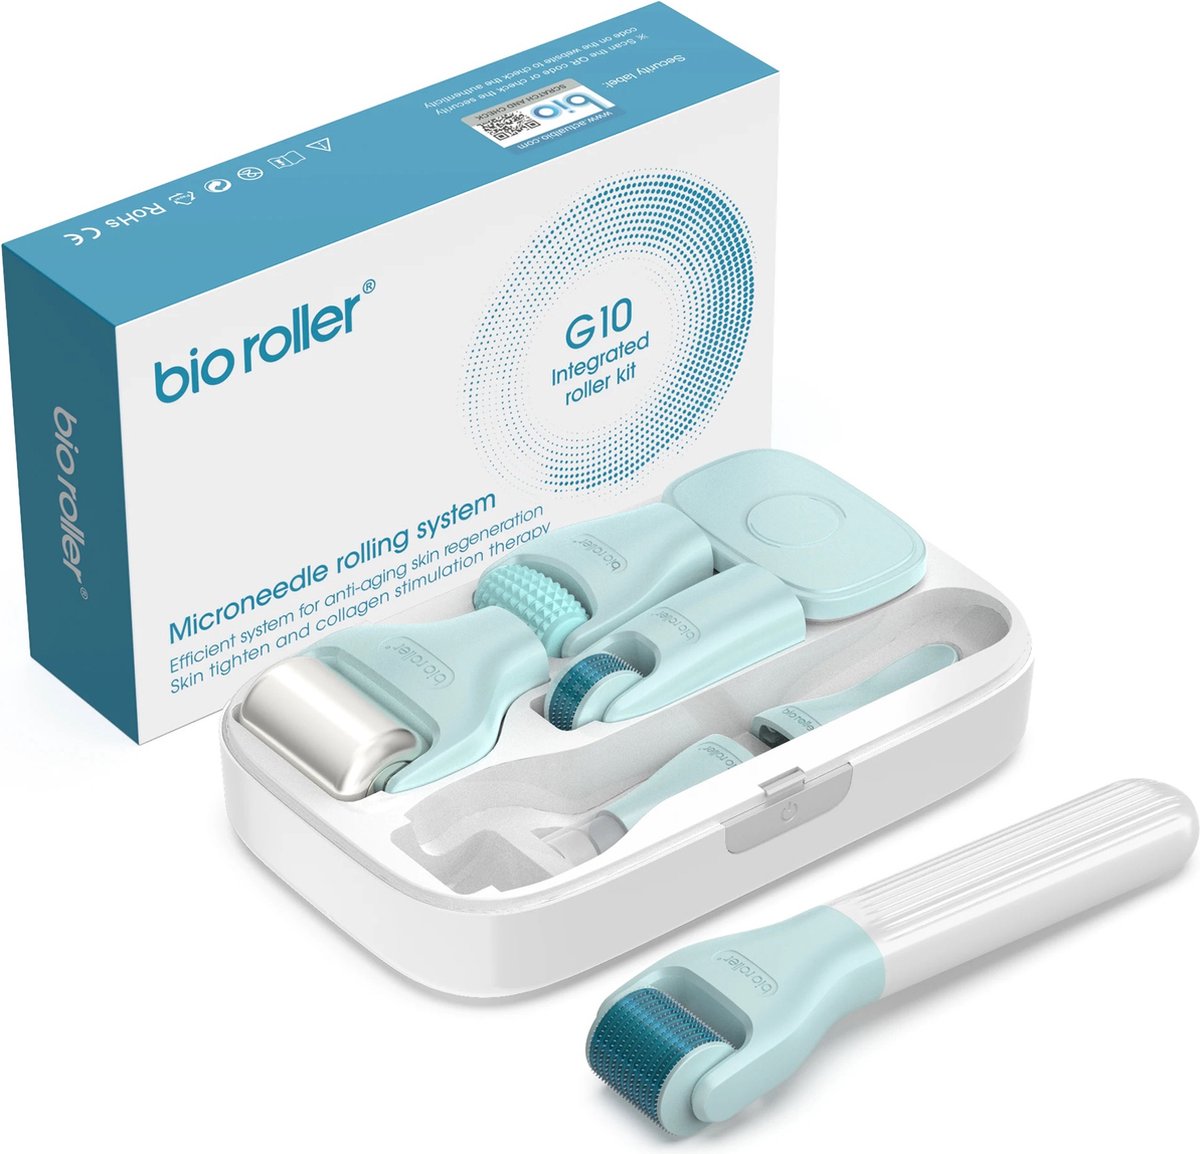 Blossombel Bio Roller G10 - Derma Roller - huidverzorging kit - Dermaroller tot 720 naalden - Cadeau voor haar